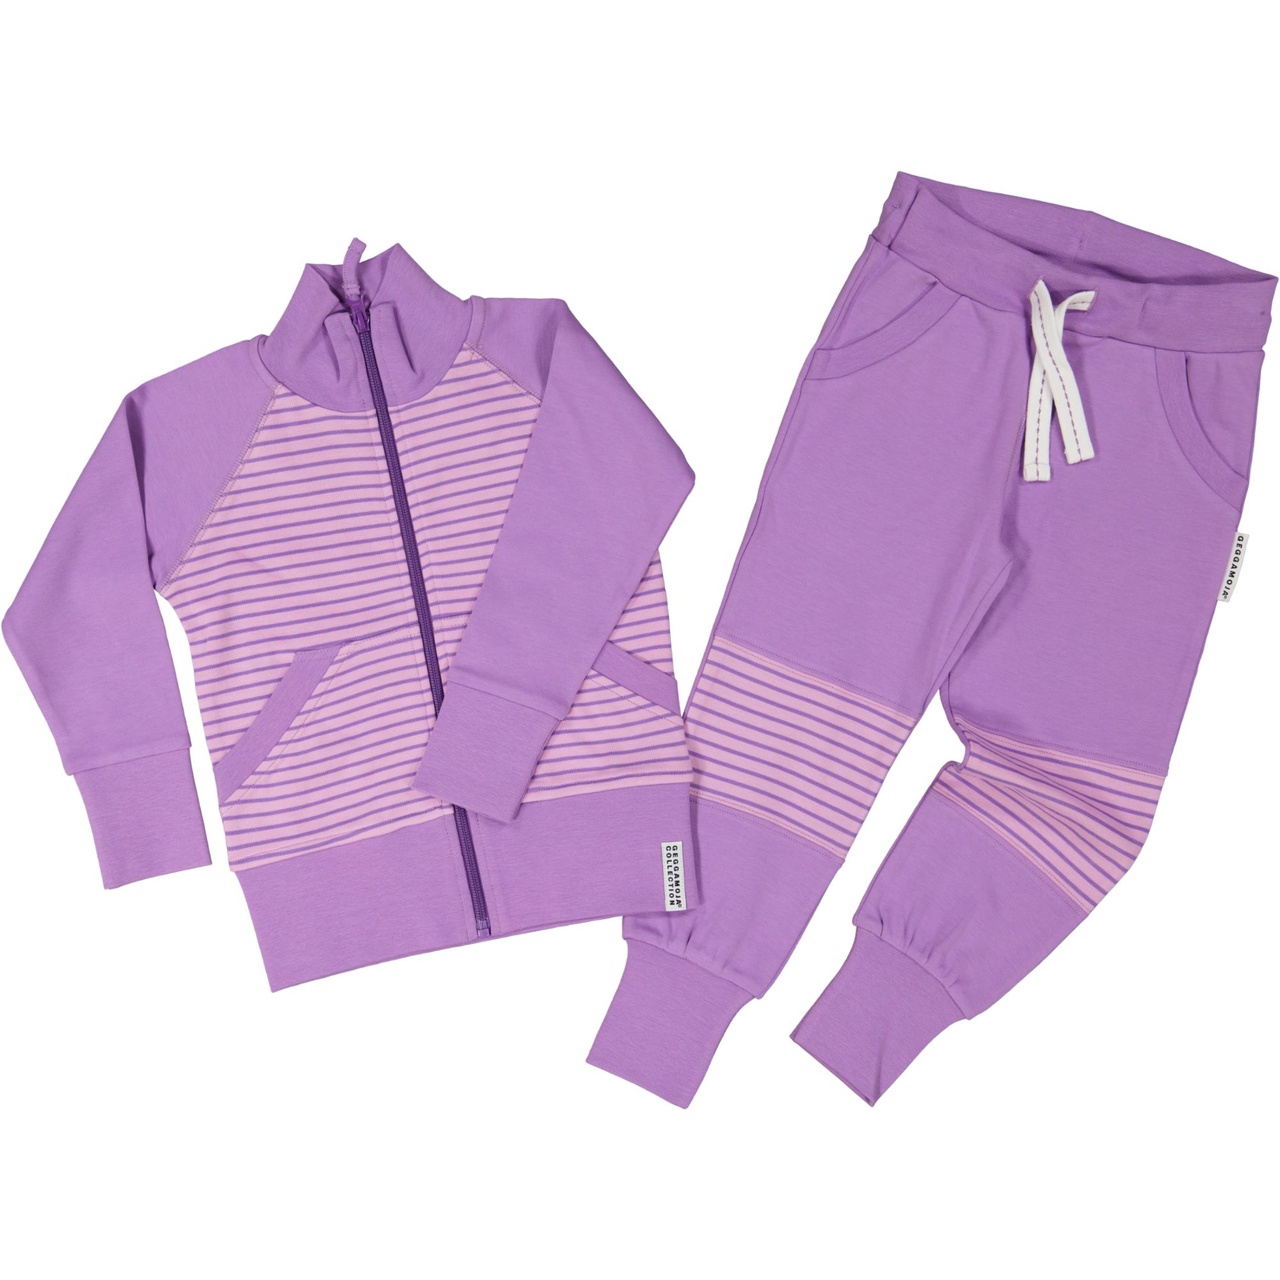 Zip sweater L.purple/purple  74/80